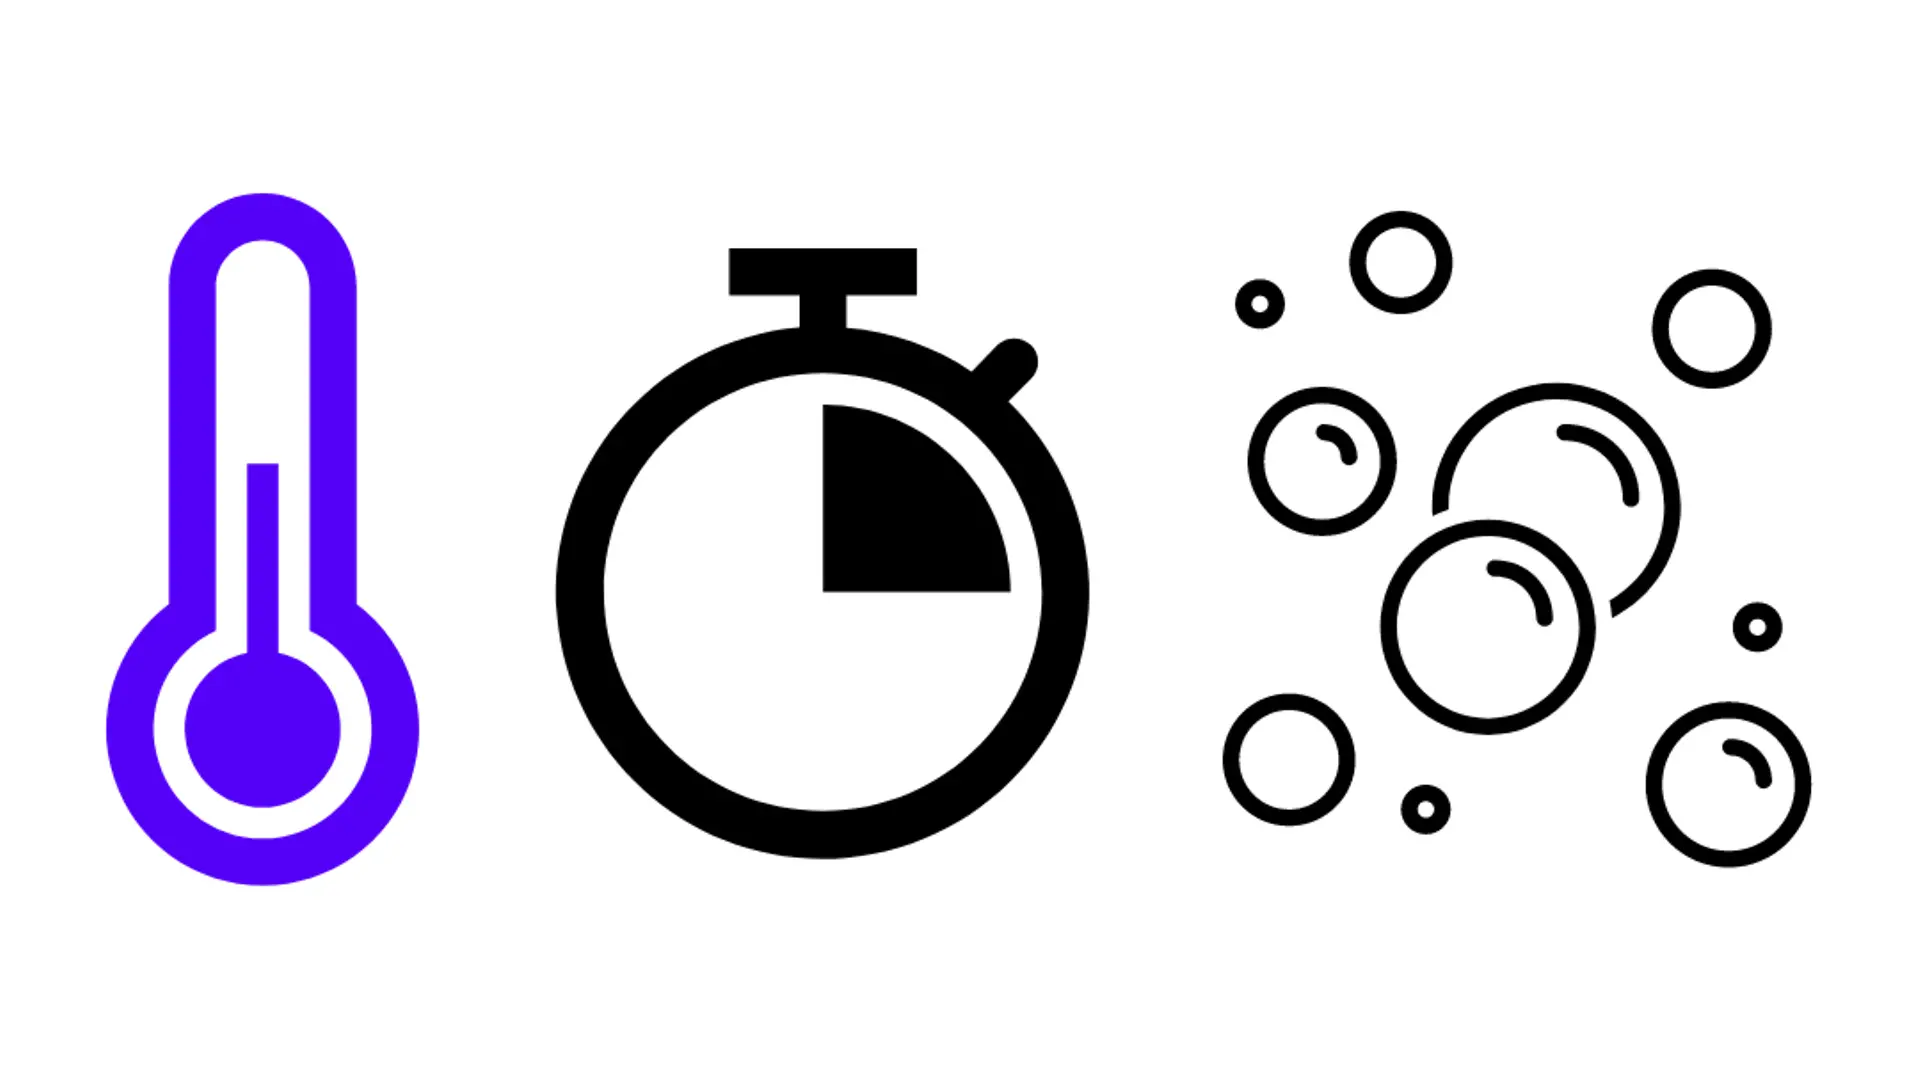 símbolo azul para termómetro, símbolo de reloj, cuarto de hora y símbolo de espuma